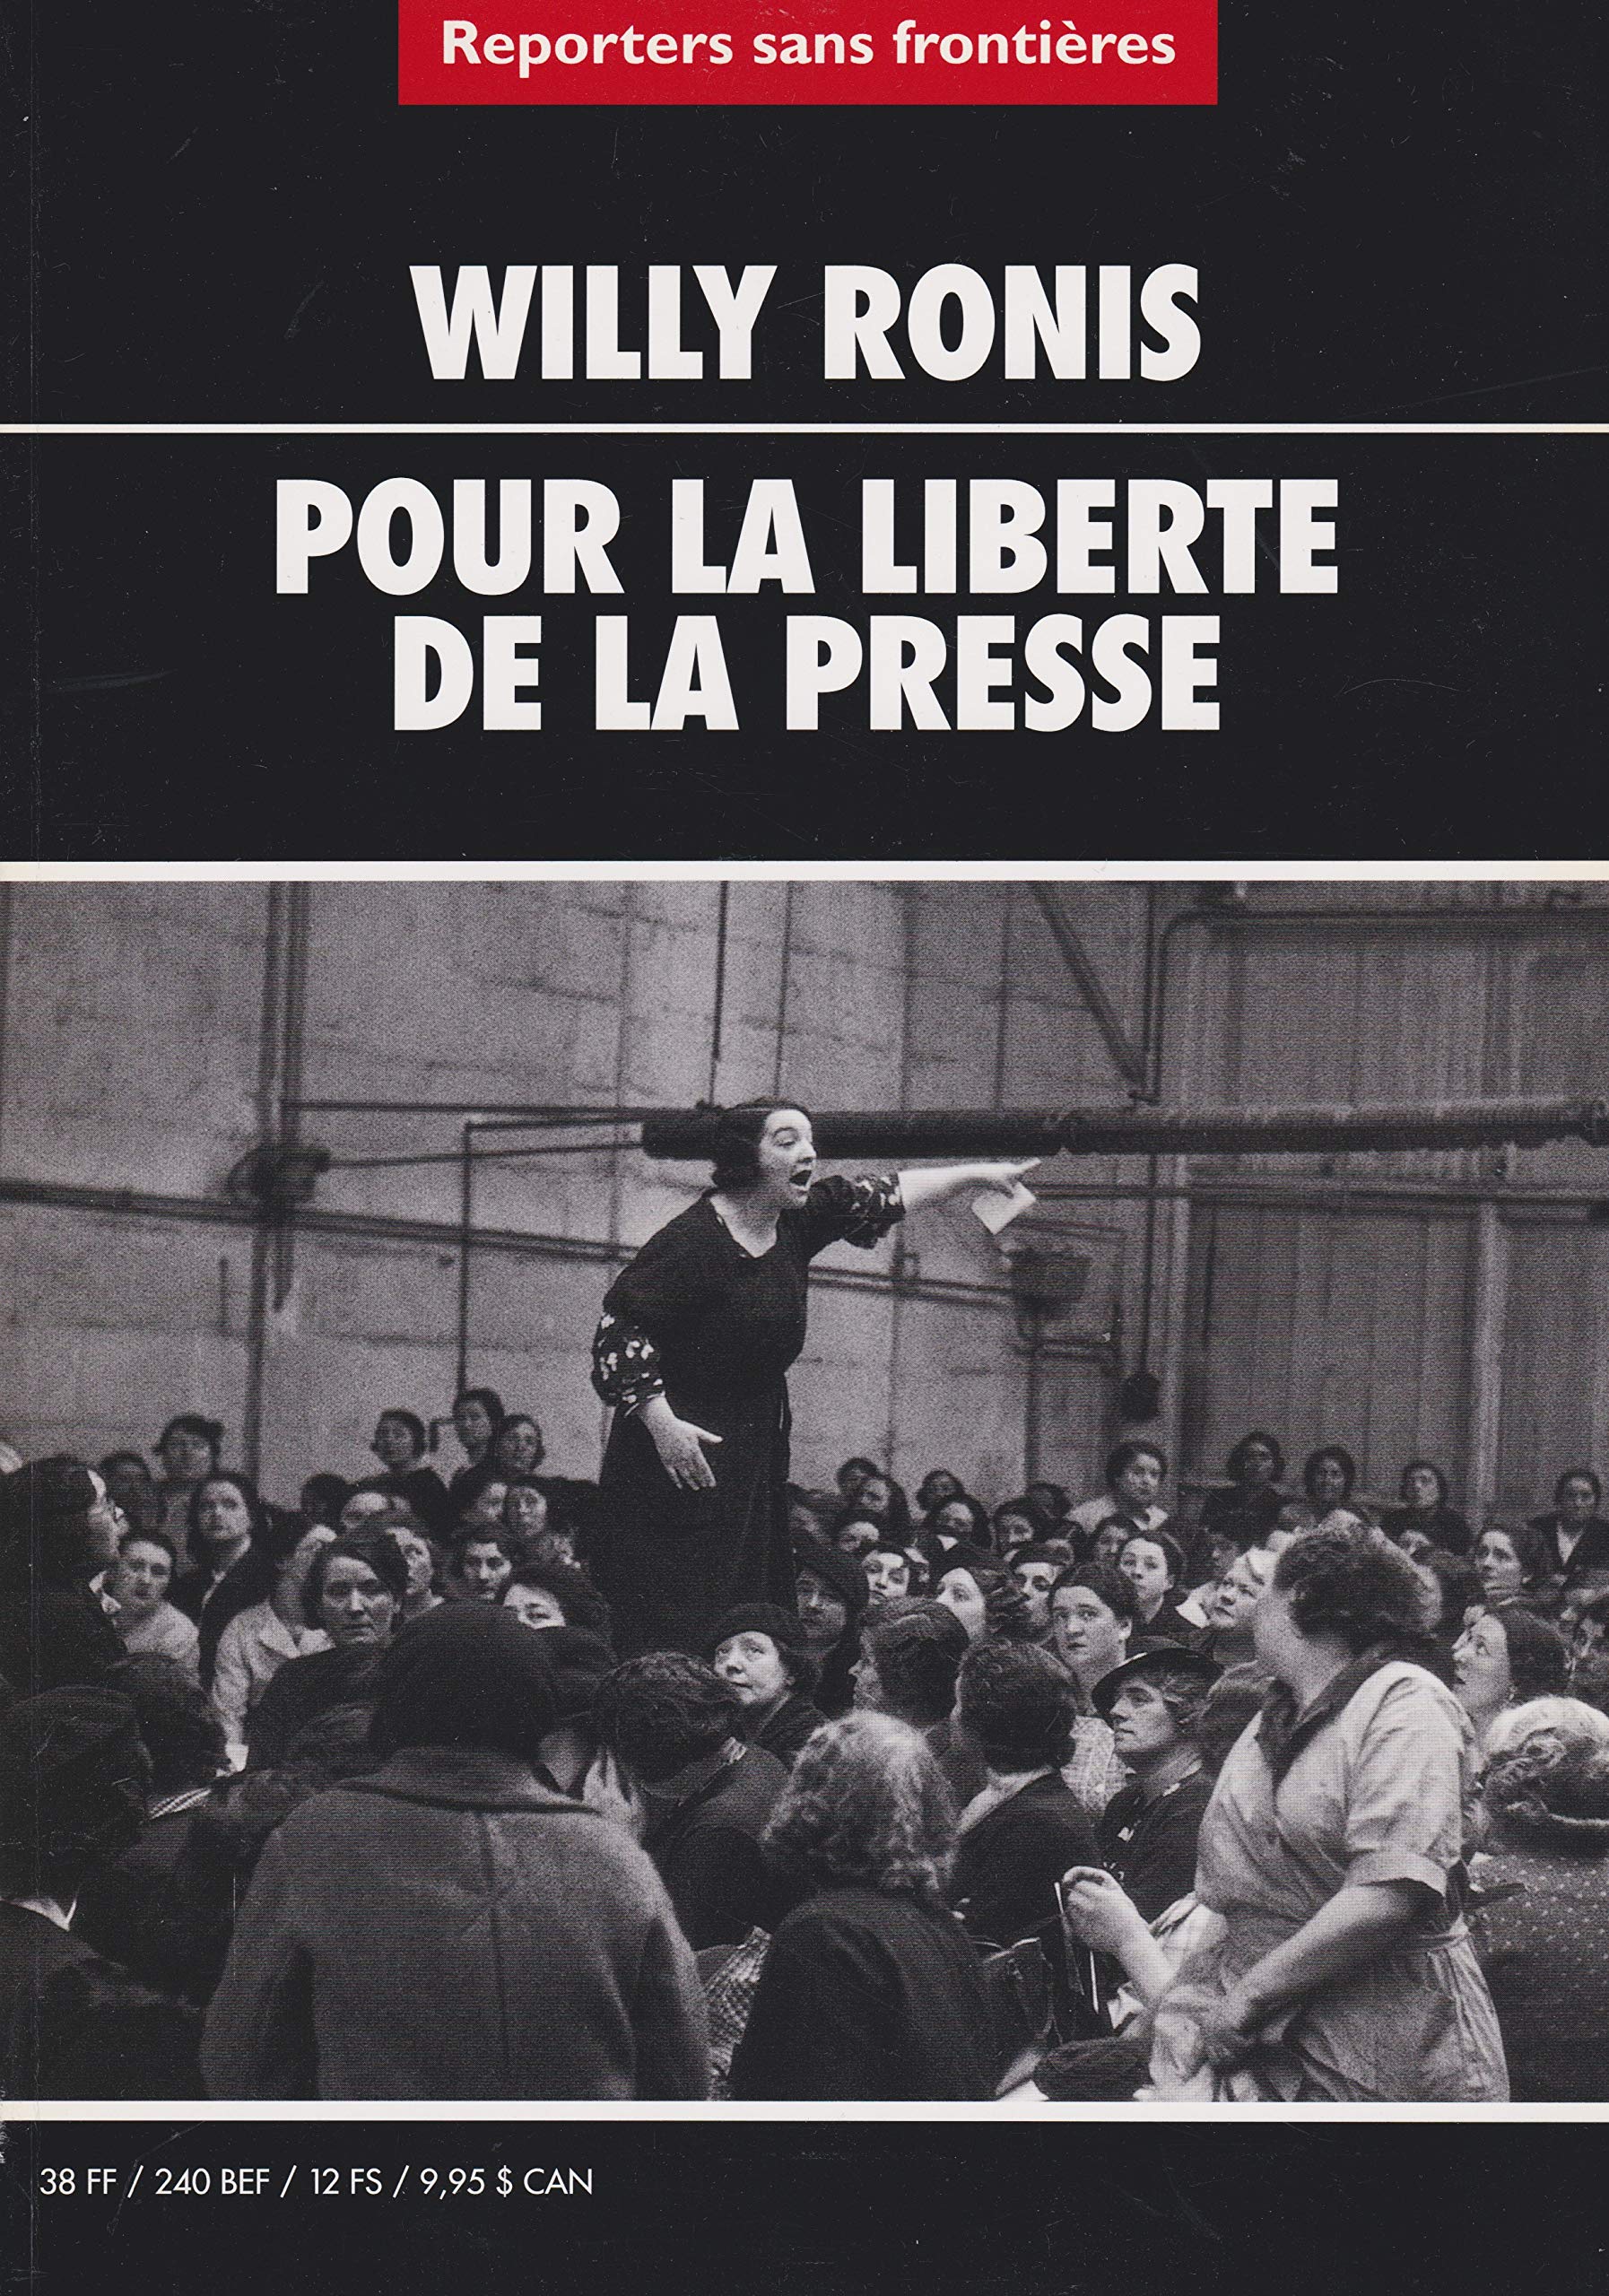 Livre ISBN 2908830604 Reporters sans frontières : Pour la liberté de la presse (Willy Ronis)